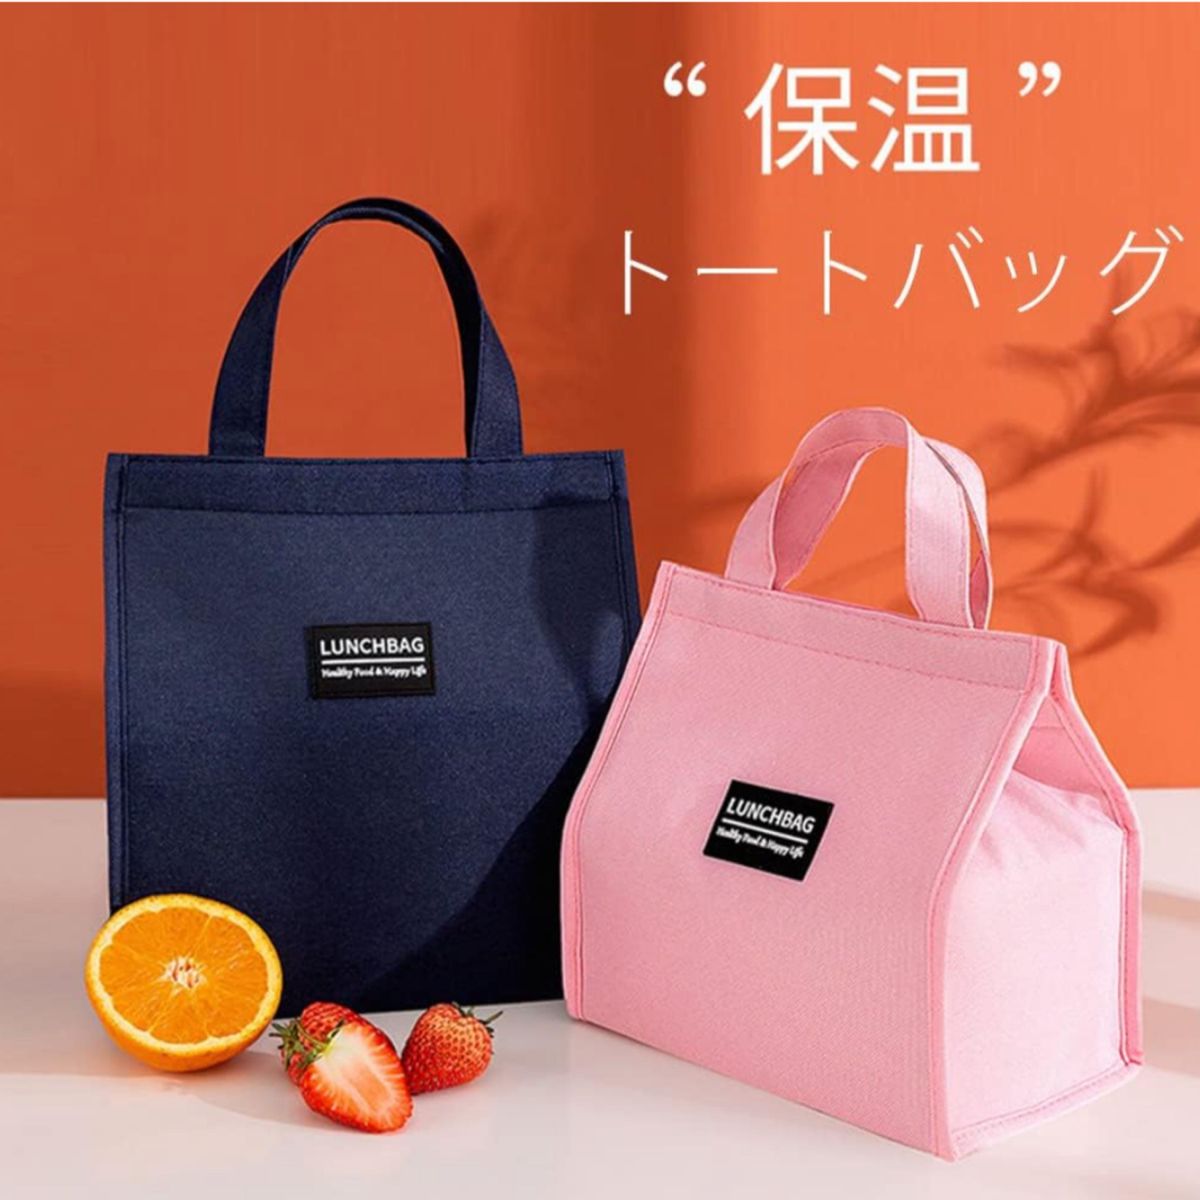 【ピンク色】ランチバッグ 弁当袋 手提げバッグ 保温保冷バッグ